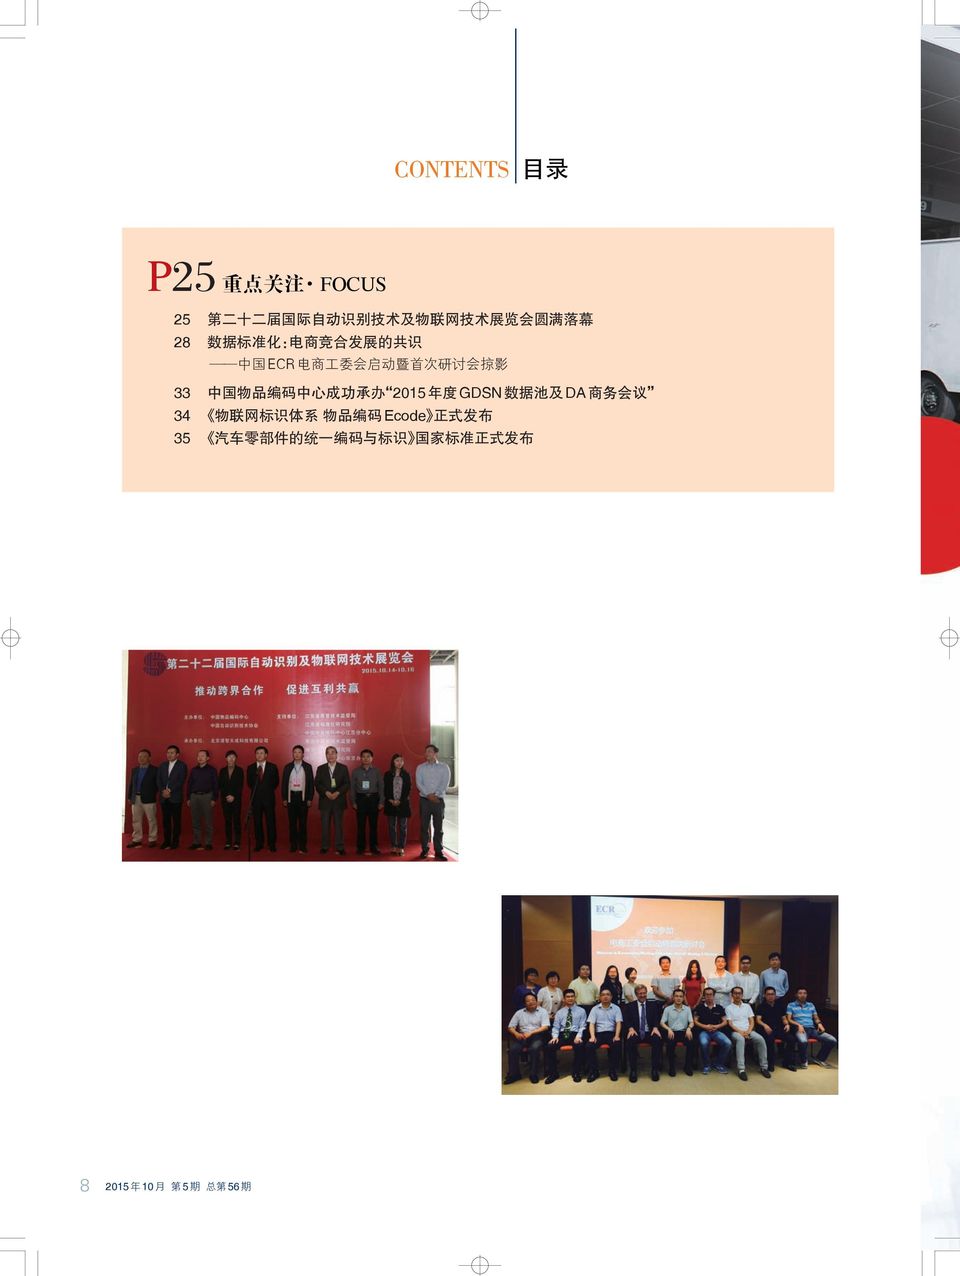 电商工委会启动暨首次研讨会掠影 33 中国物品编码中心成功承办 2015 年度 GDSN 数据池及 DA